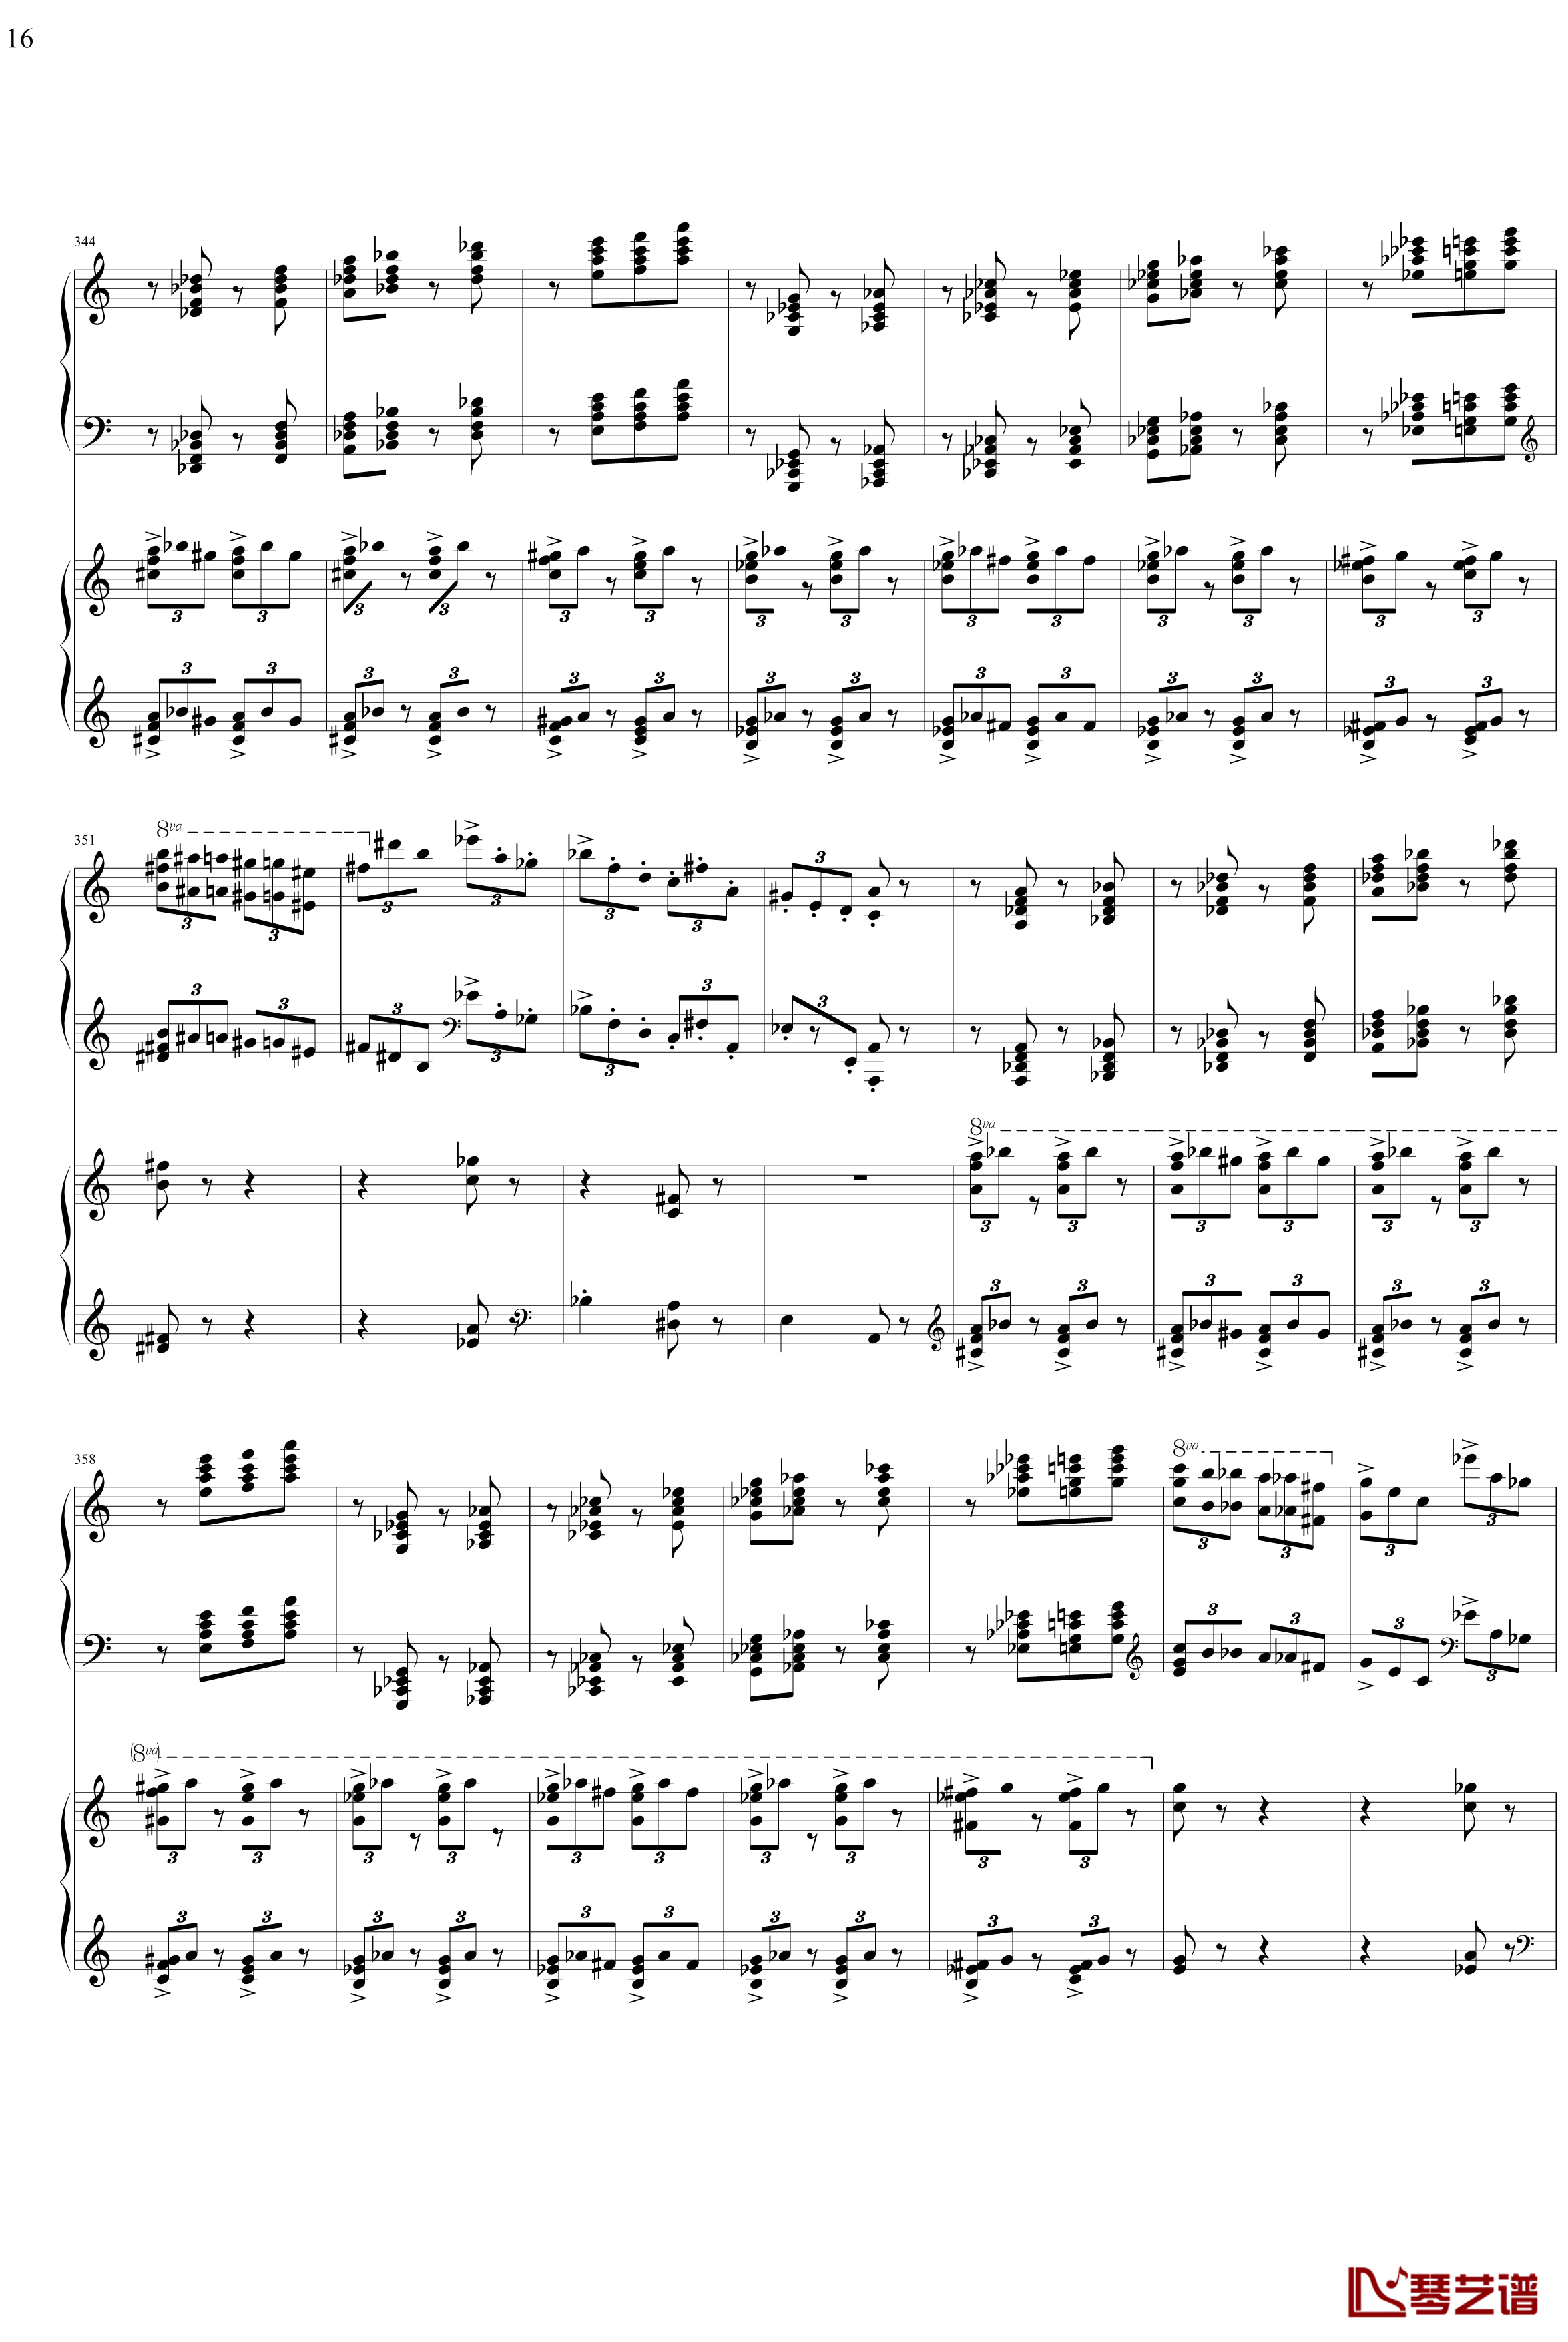 帕格尼主题狂想曲钢琴谱-1~10变奏-拉赫马尼若夫16